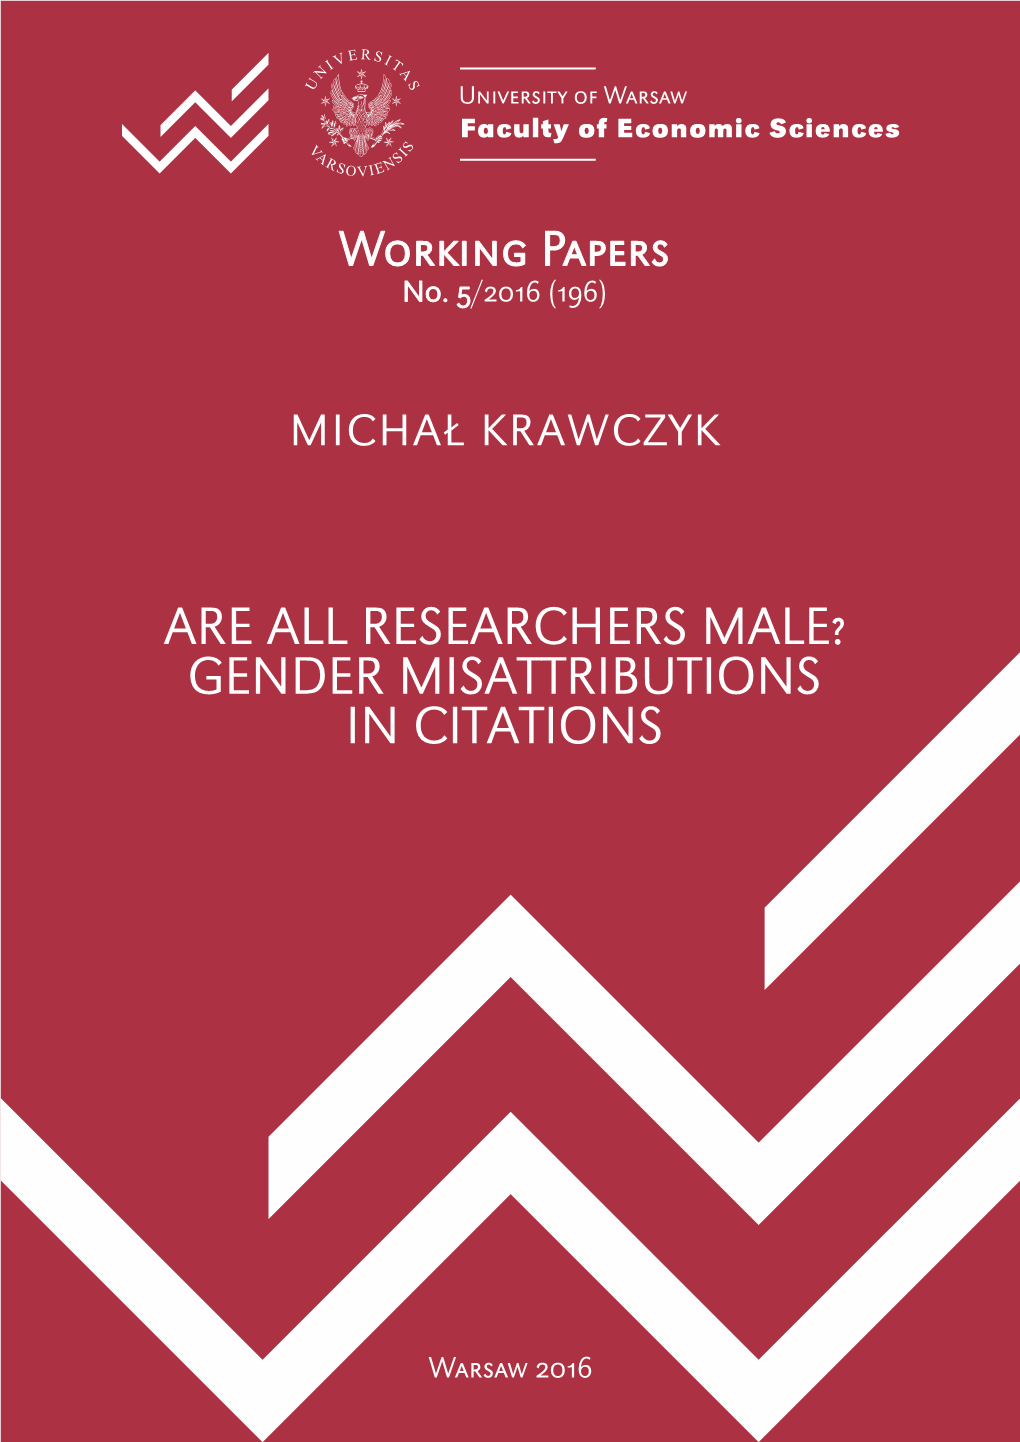 Gender Misattributions in Citations